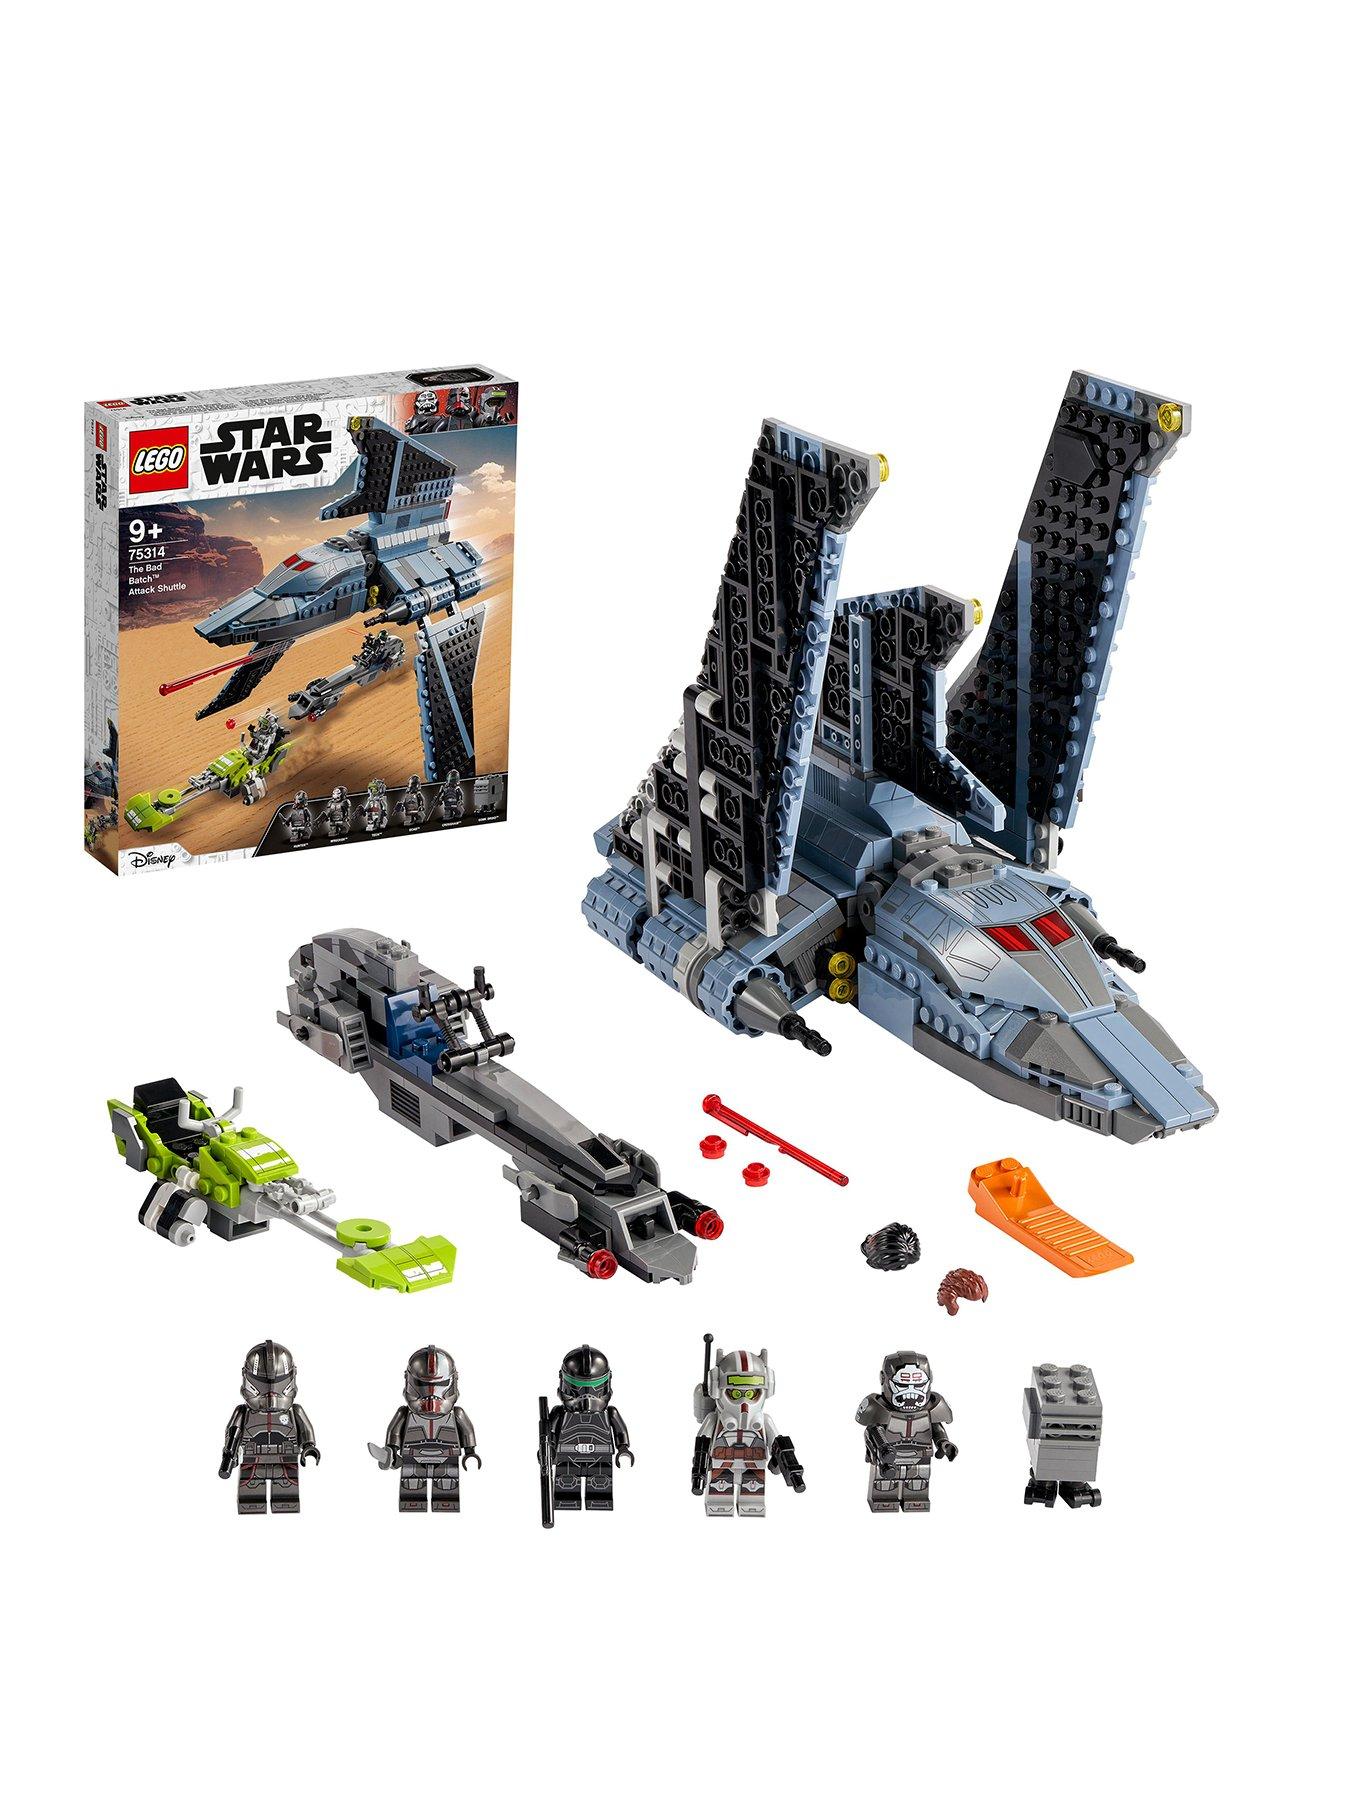 Neu & OVP Lego Star Wars verschiedene Set's zum aussuchen 